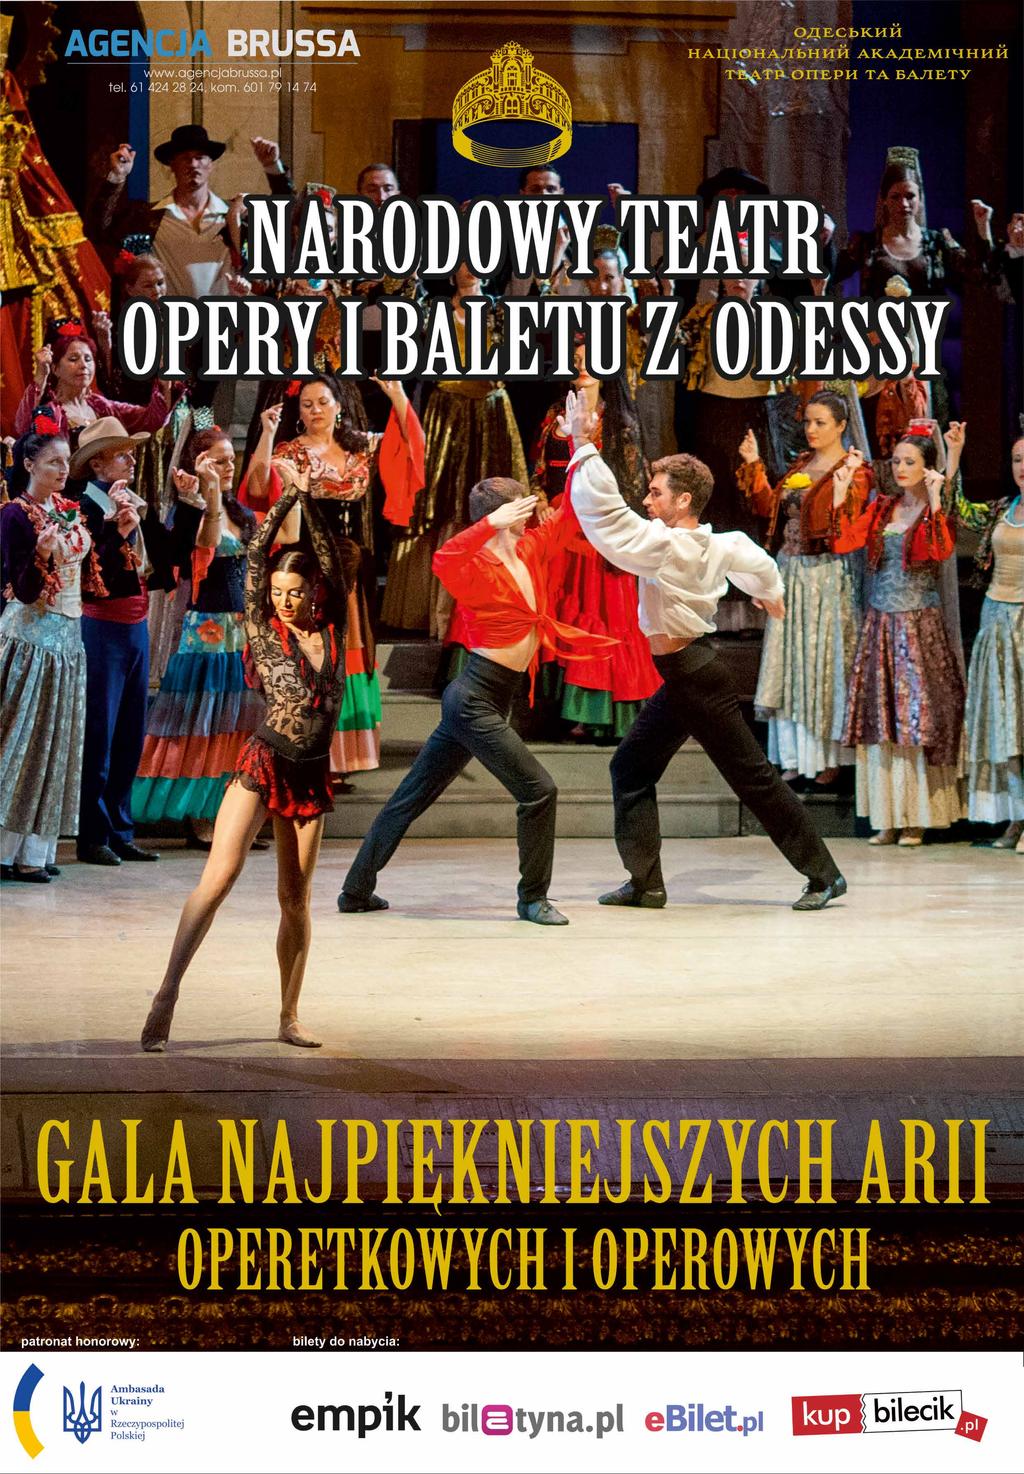 Artyści Teatru Narodowego Opery i Baletu z Odessy zapraszają!